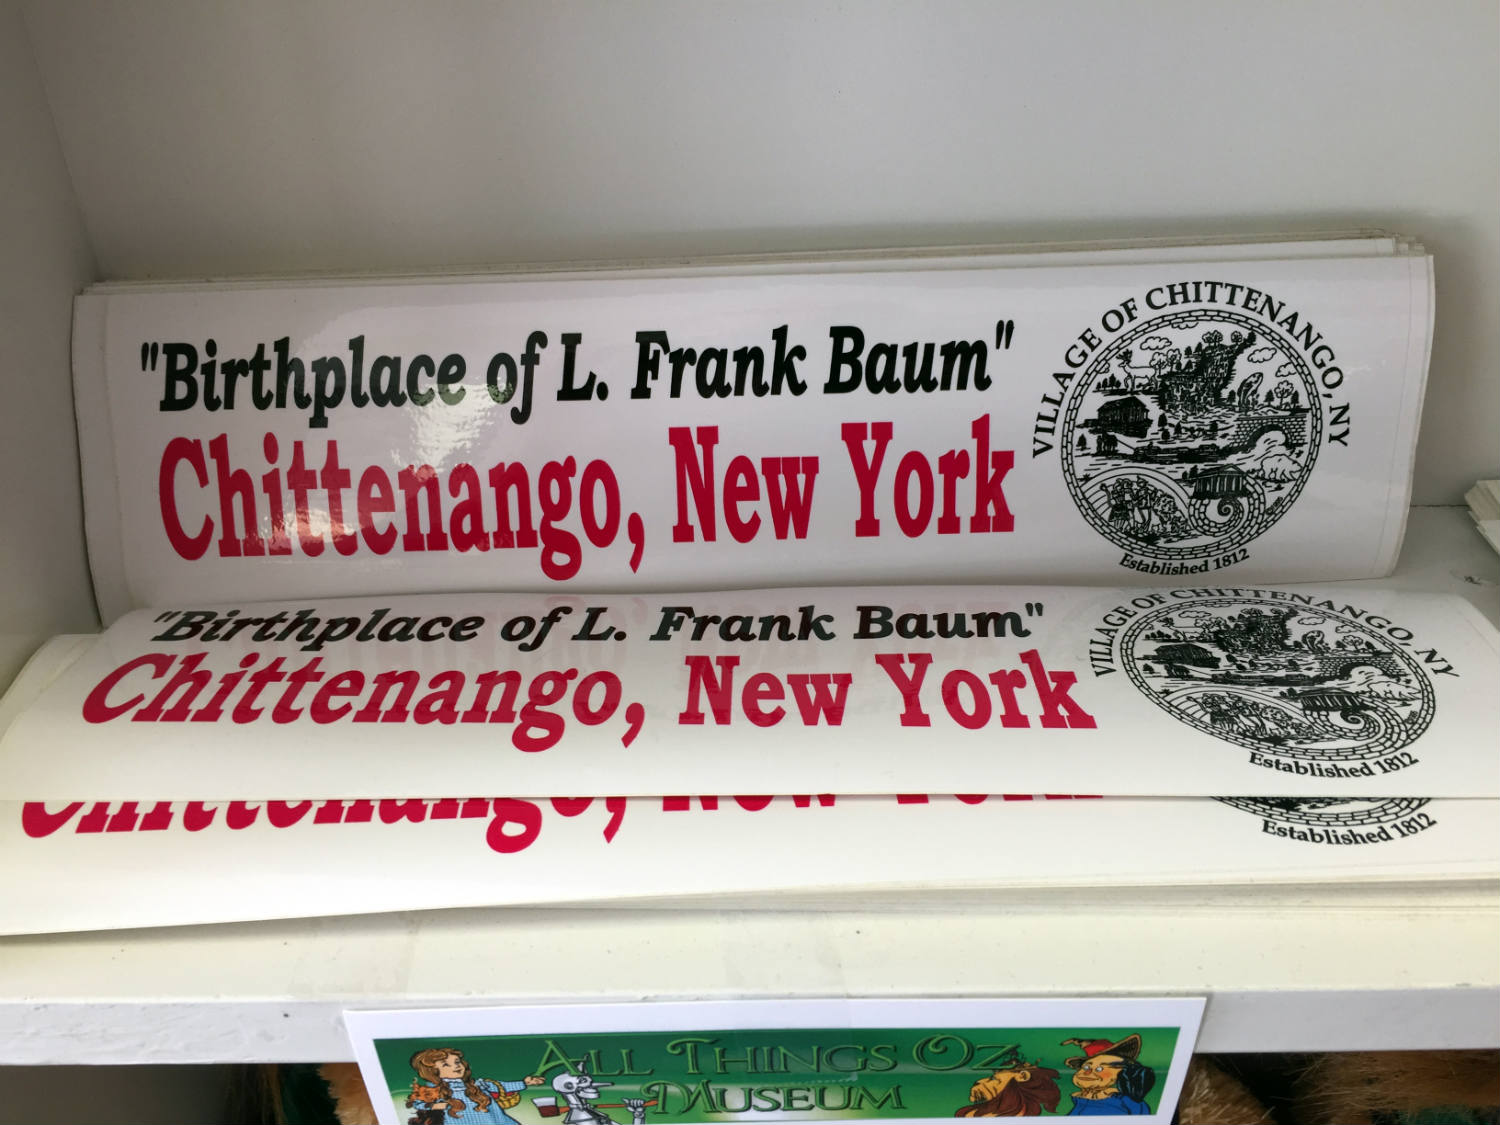 Chittenango, New York bumper stickers